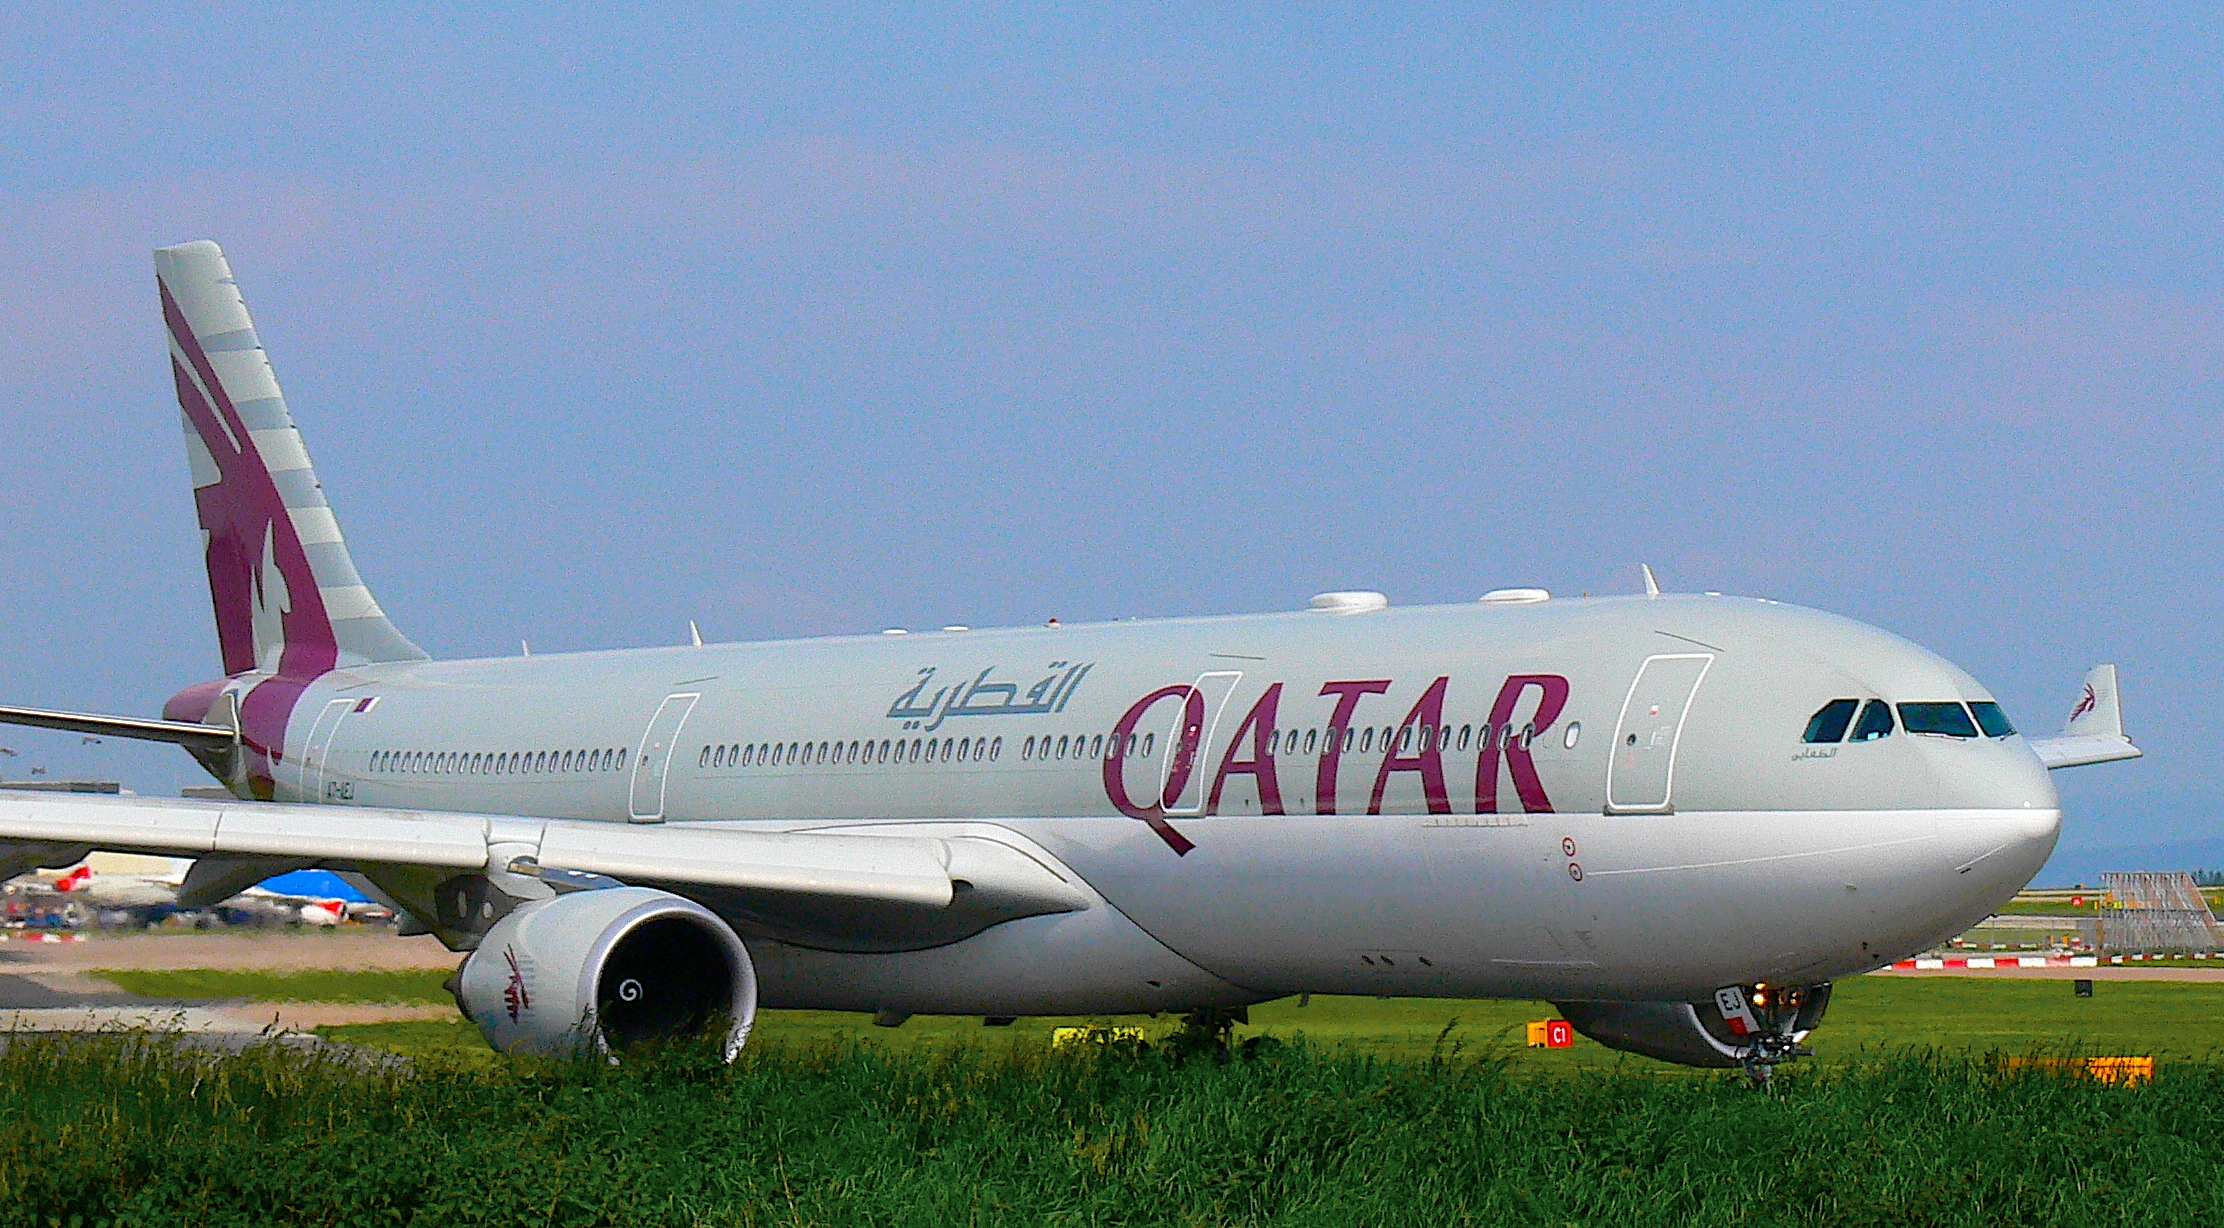 QATAR Airways Delays A380 LHR Service to Oct 2014